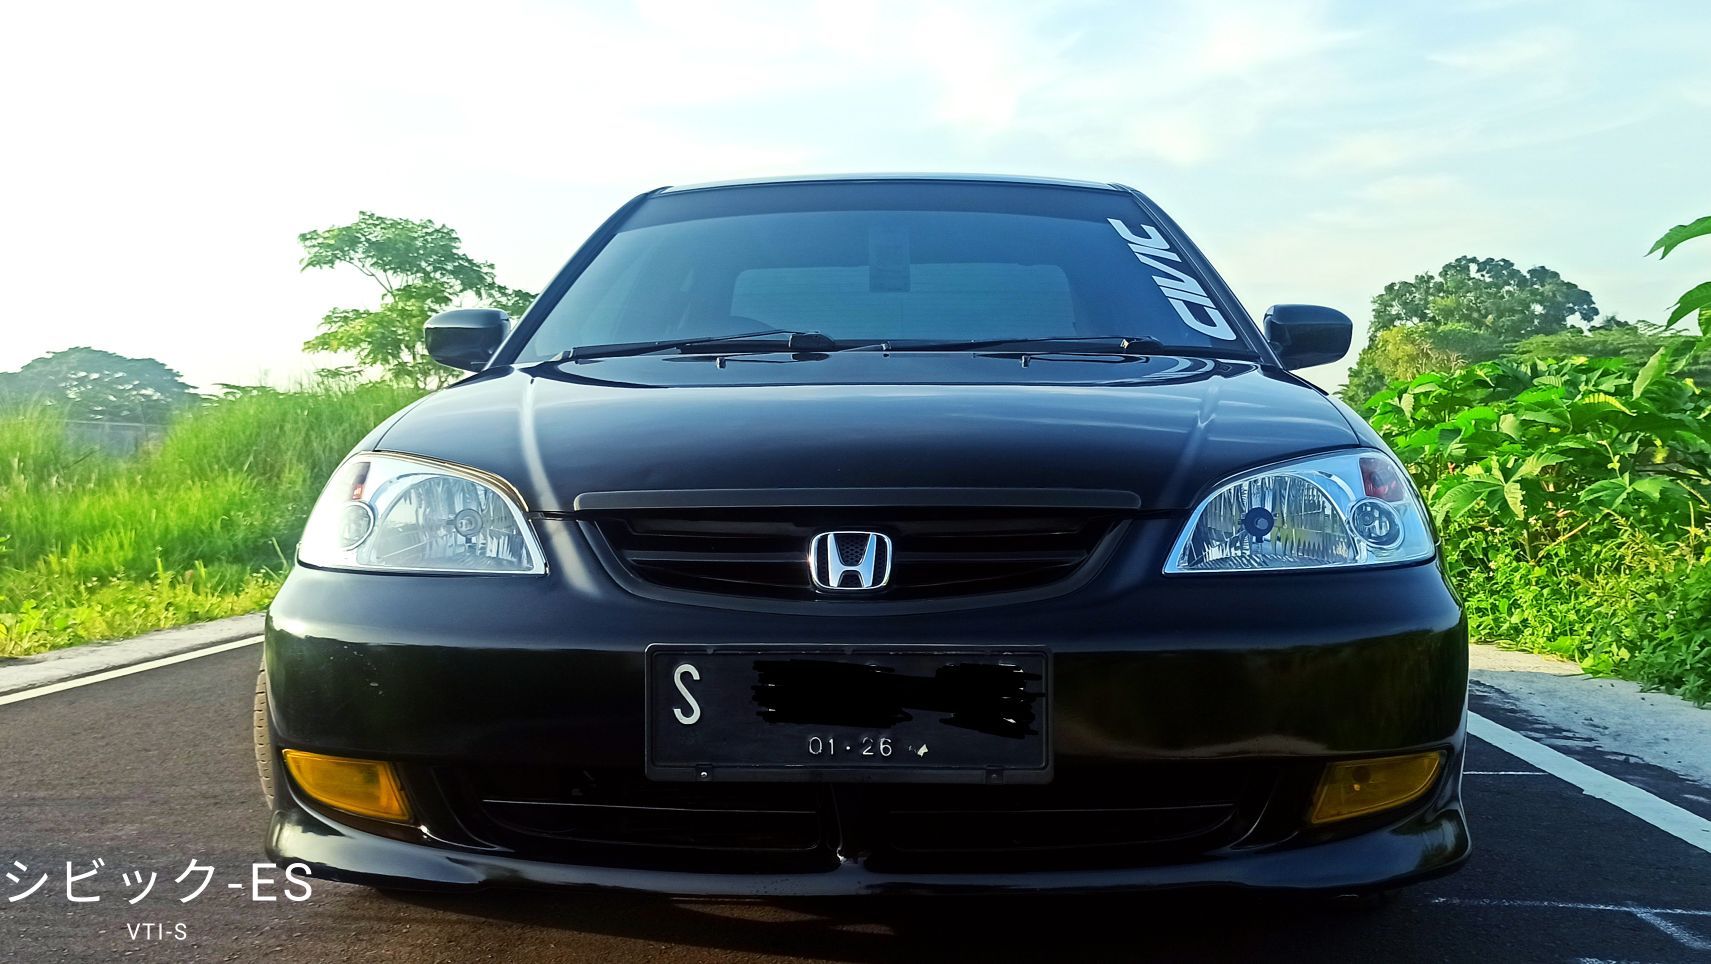 Used 2003 Honda Civic VTi - S 1.7L AT VTi - S 1.7L AT